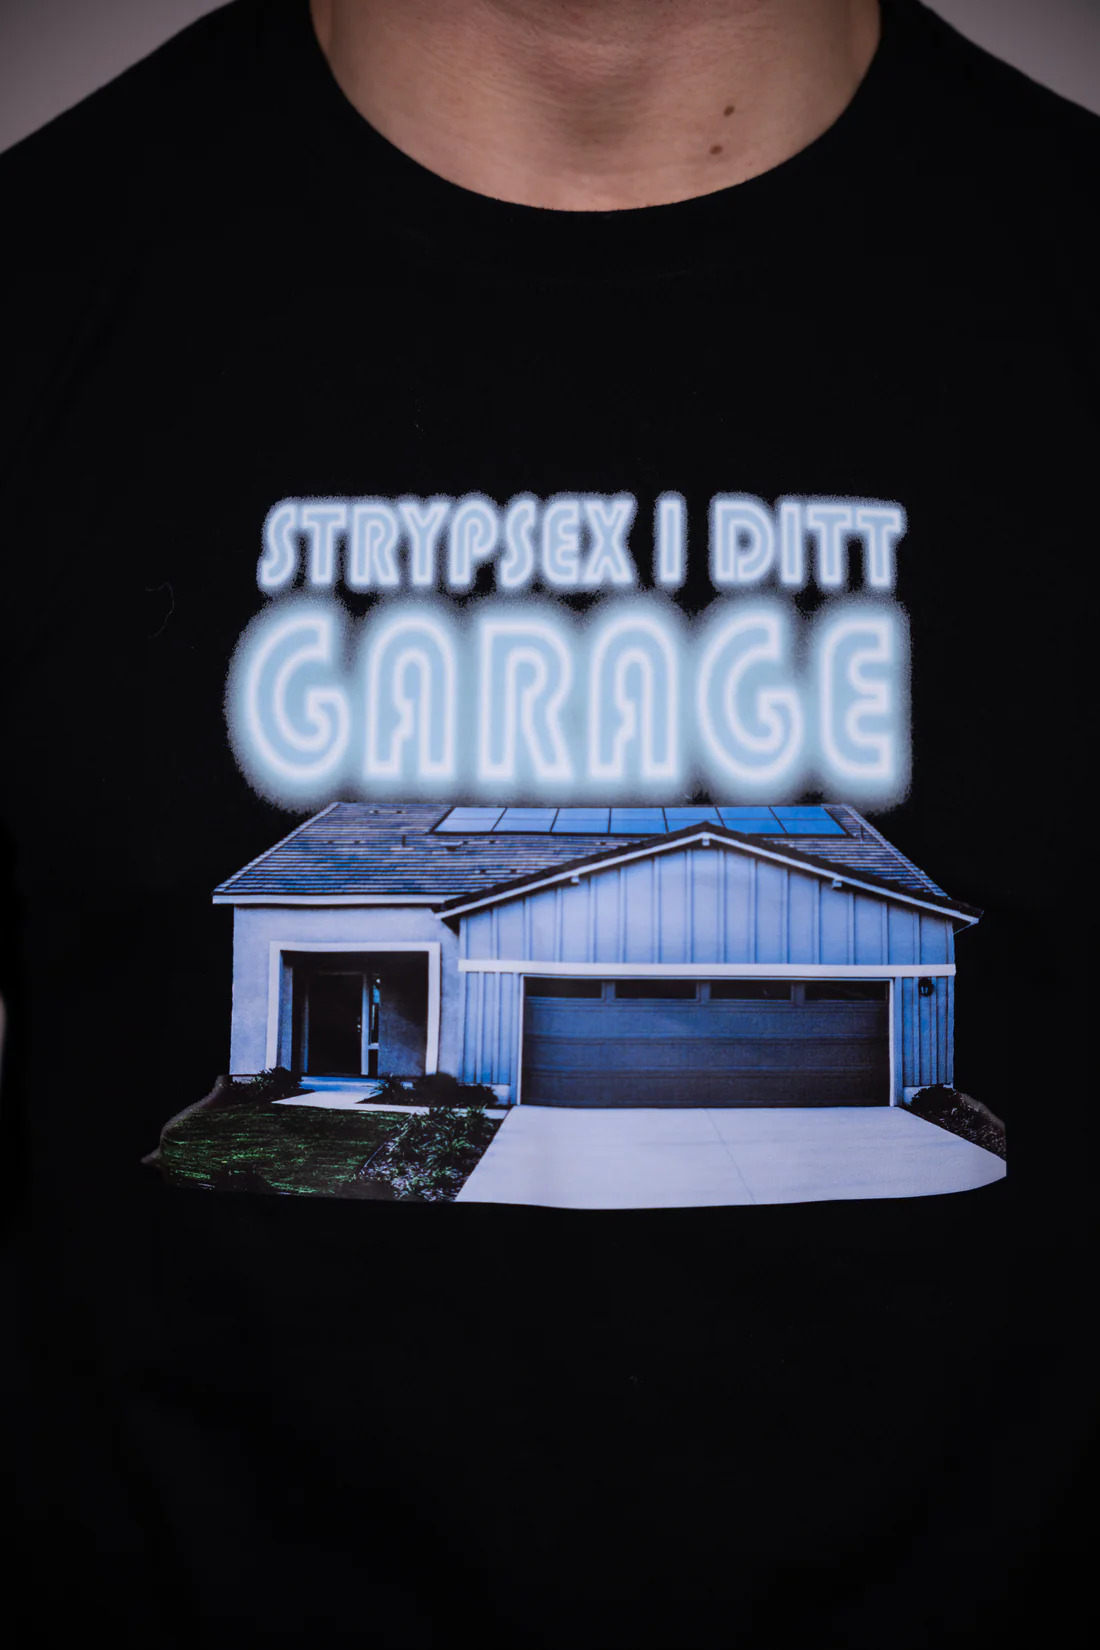 Strypsex i ditt garage T-shirt